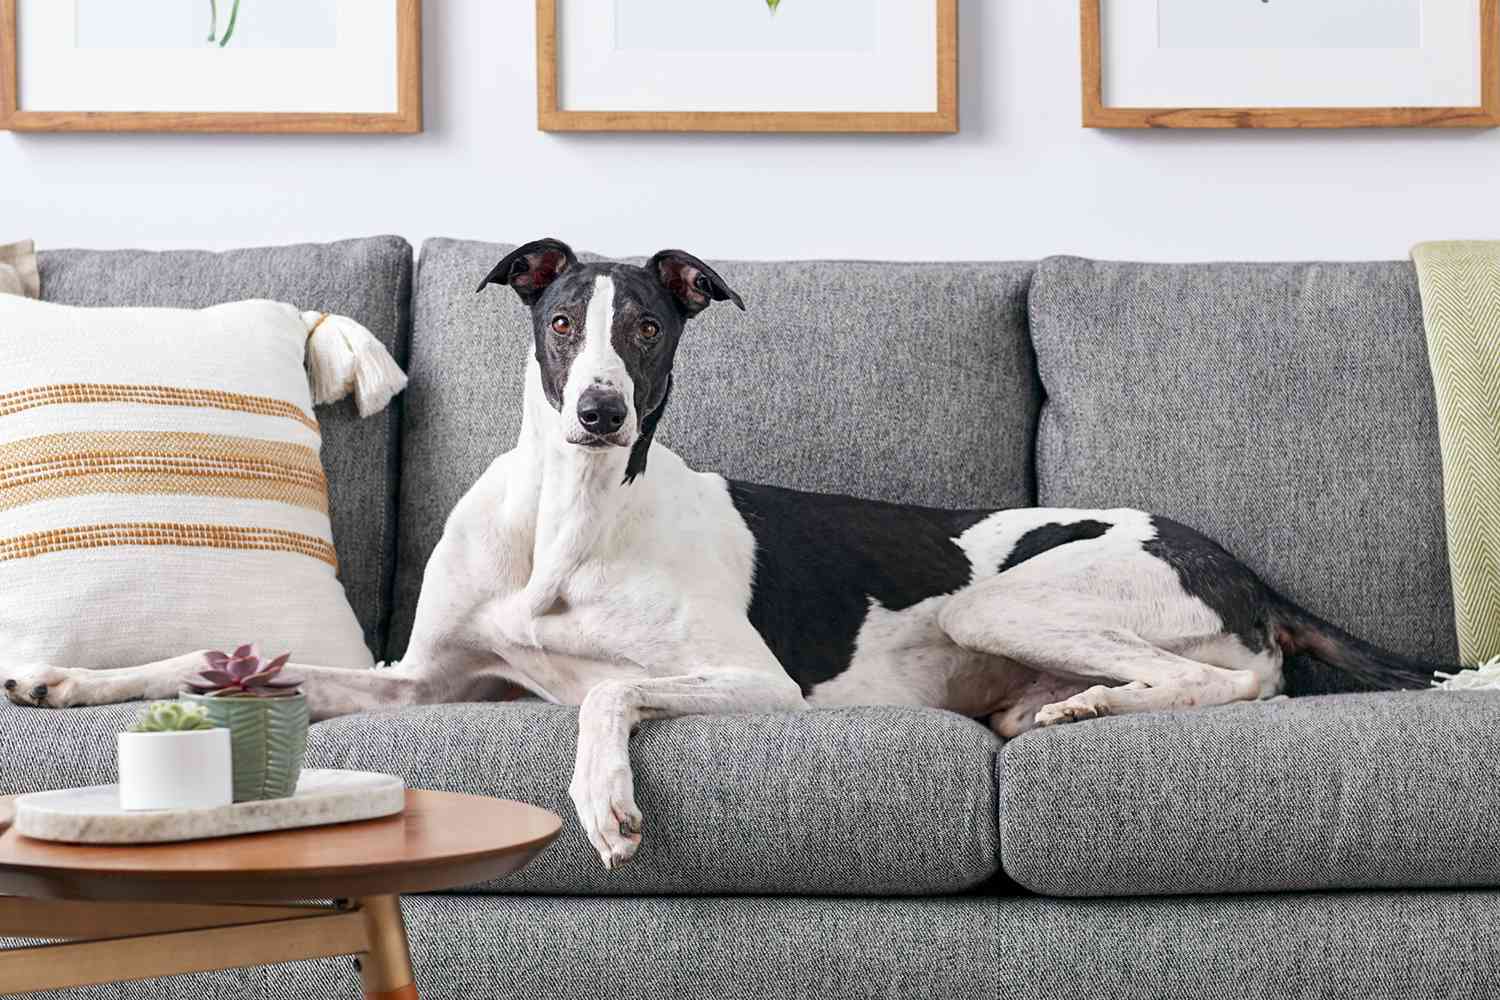 A Greyhound on a sofa